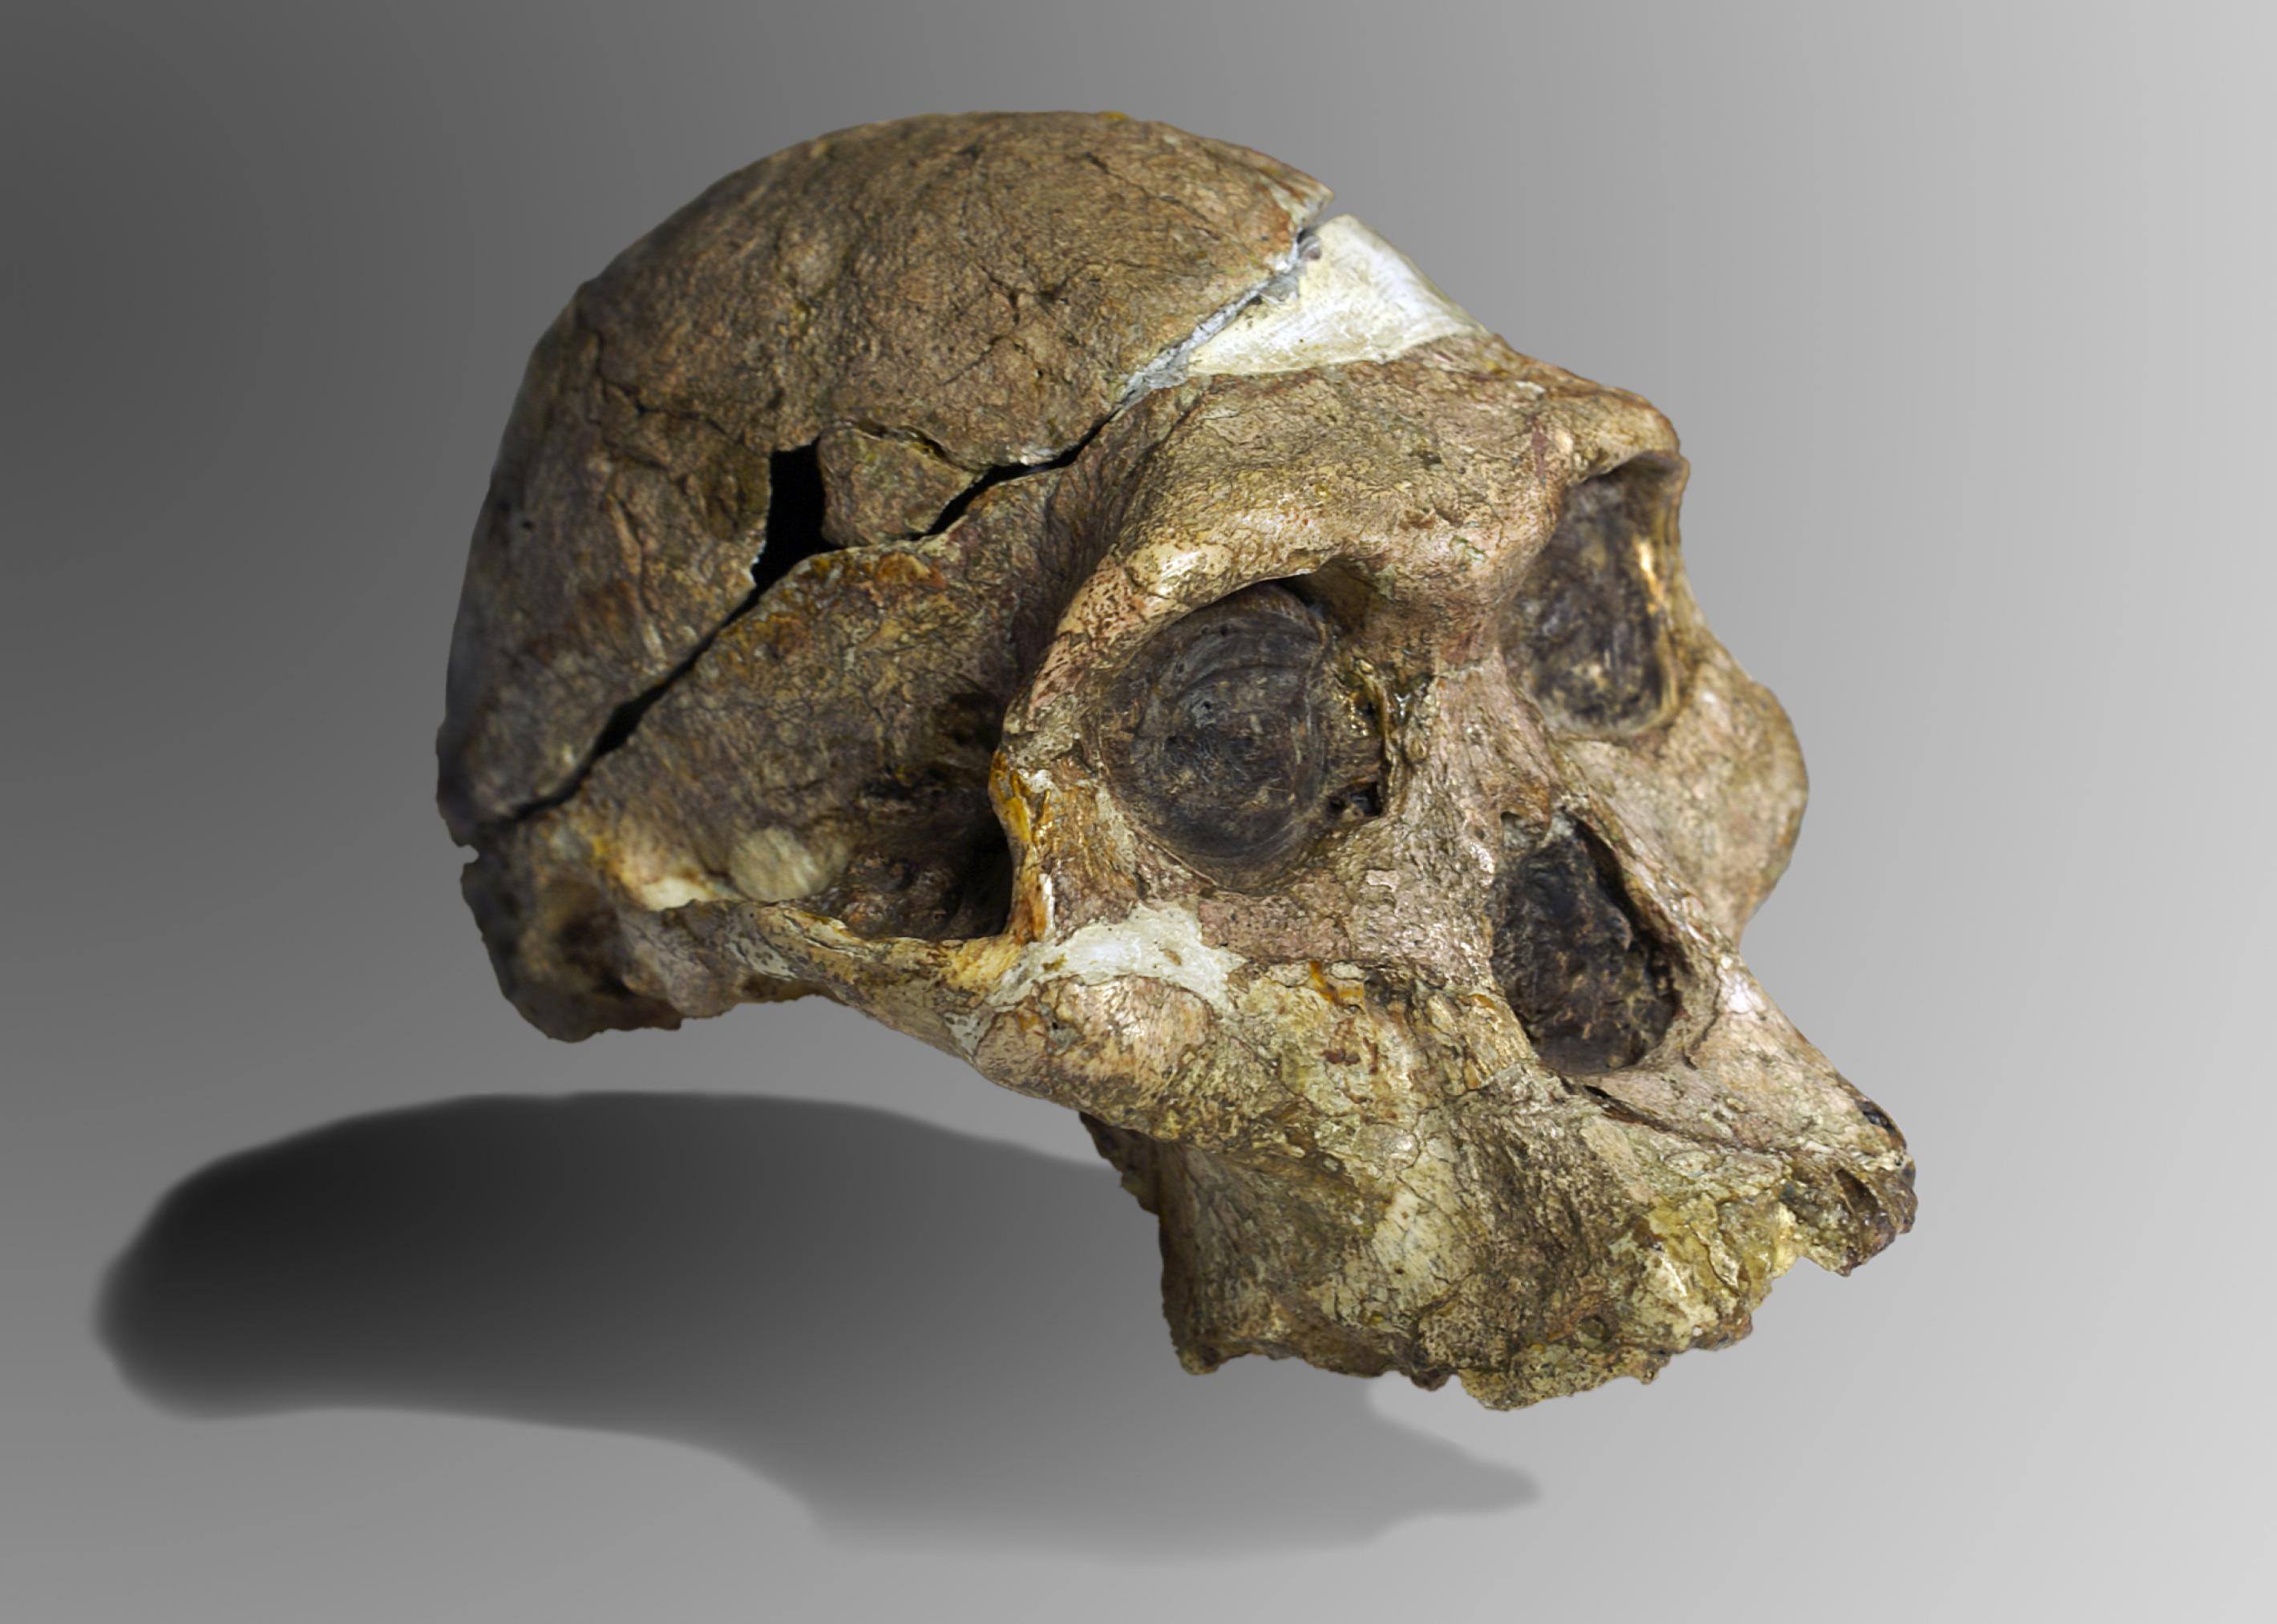 Das Foto zeigt den 1947 in Südafrika gefundenen, fossilen Schädel eines Wesens, das als Australopithecus africanus bezeichnet wird. Der Schädel hat mächtige Knochenwülste über den Augen und bietet Raum für ein nur kleines Gehirn. Insgesamt erinnert er deutlich mehr an einen Schimpansen als an einen Menschen. Dennoch können Forschende an Details erkennen, dass Australopithecus den aufrechten Gang beherrschte. Mit dem Wesen war ein Bindeglied zwischen Mensch und Affe gefunden worden, das Darwins Theorie von der Evolution bestätigte.